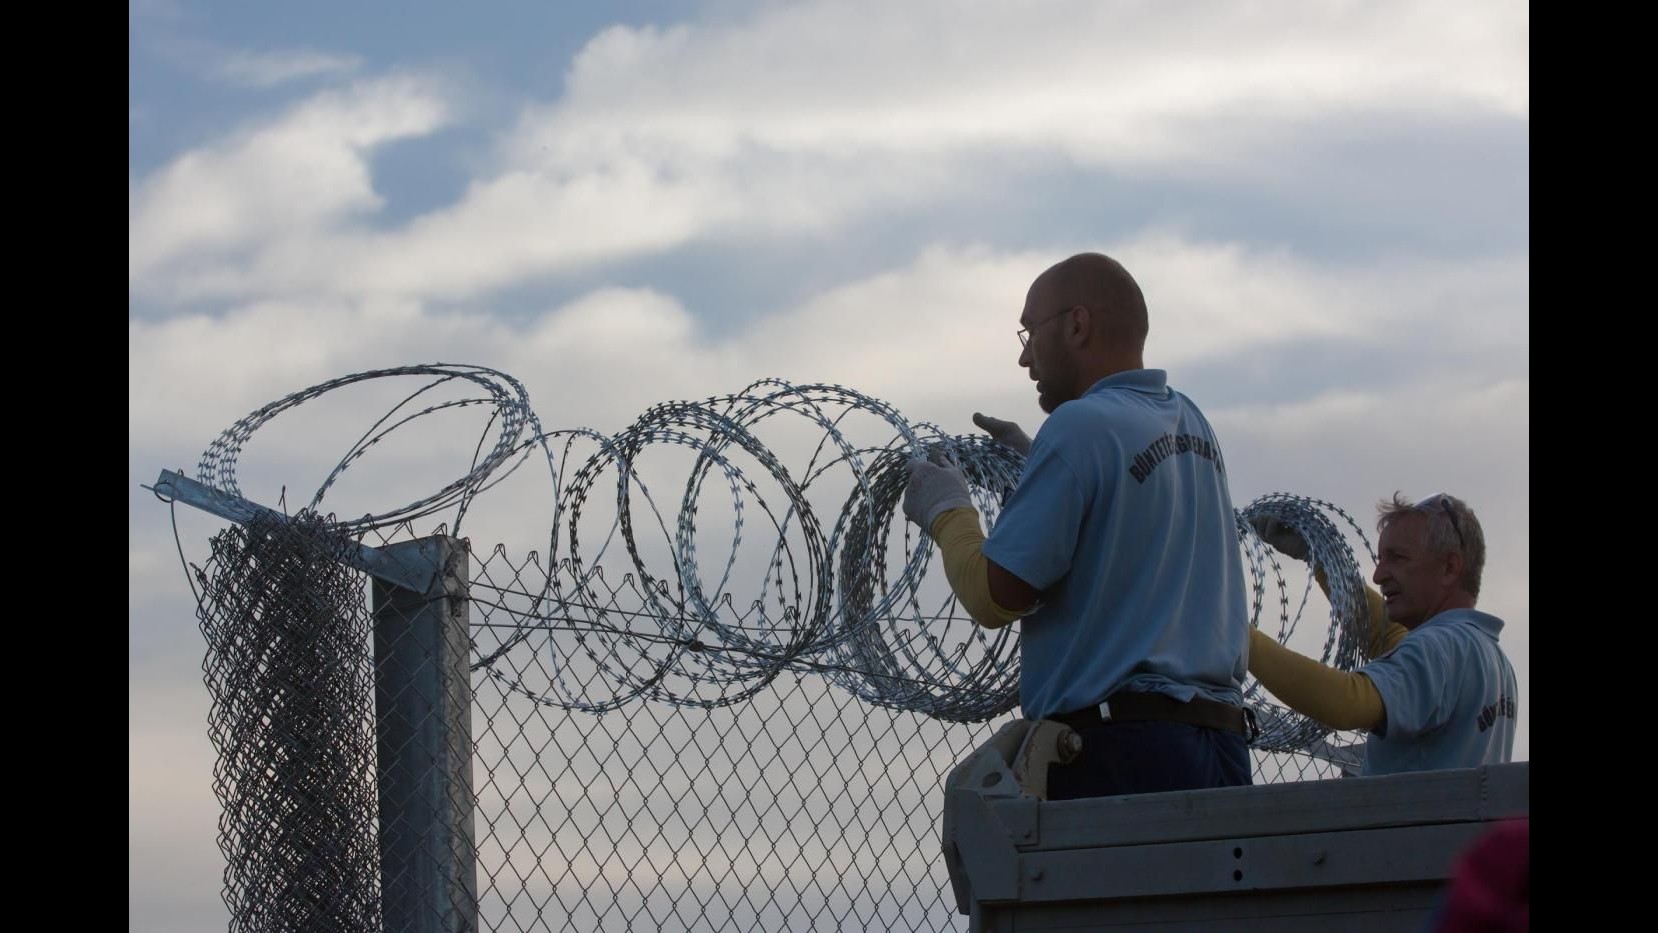 Immigrazione, Ungheria: superare confine si rischia fino 5 anni carcere